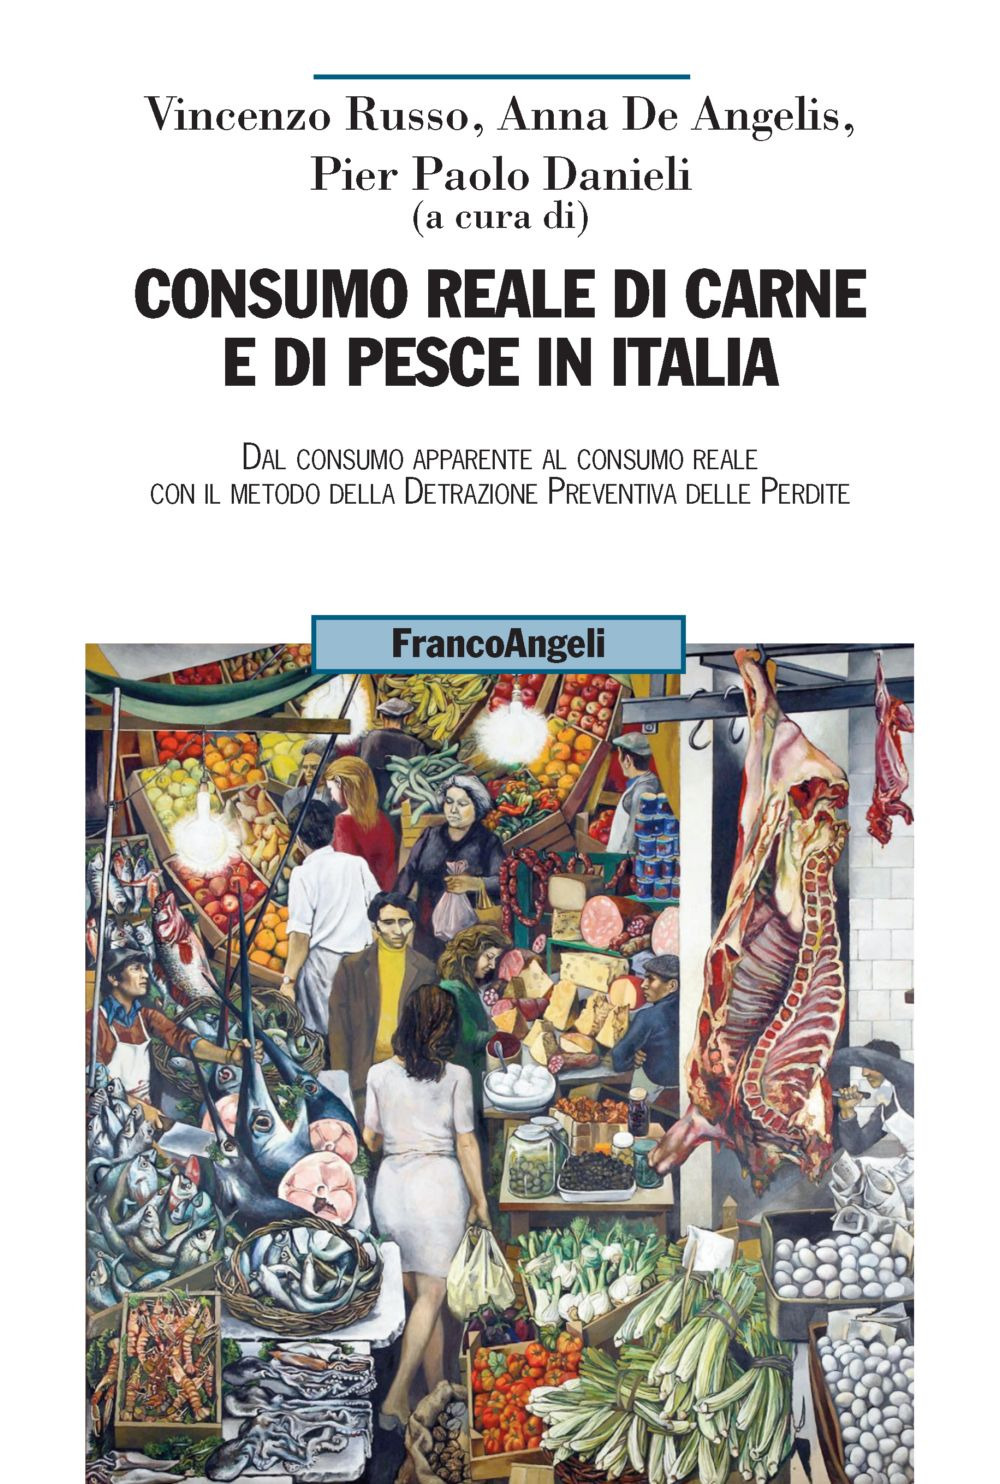 Image of Consumo reale di carne e di pesce in Italia. Dal consumo apparente al consumo reale col metodo della detrazione preventiva delle perdite